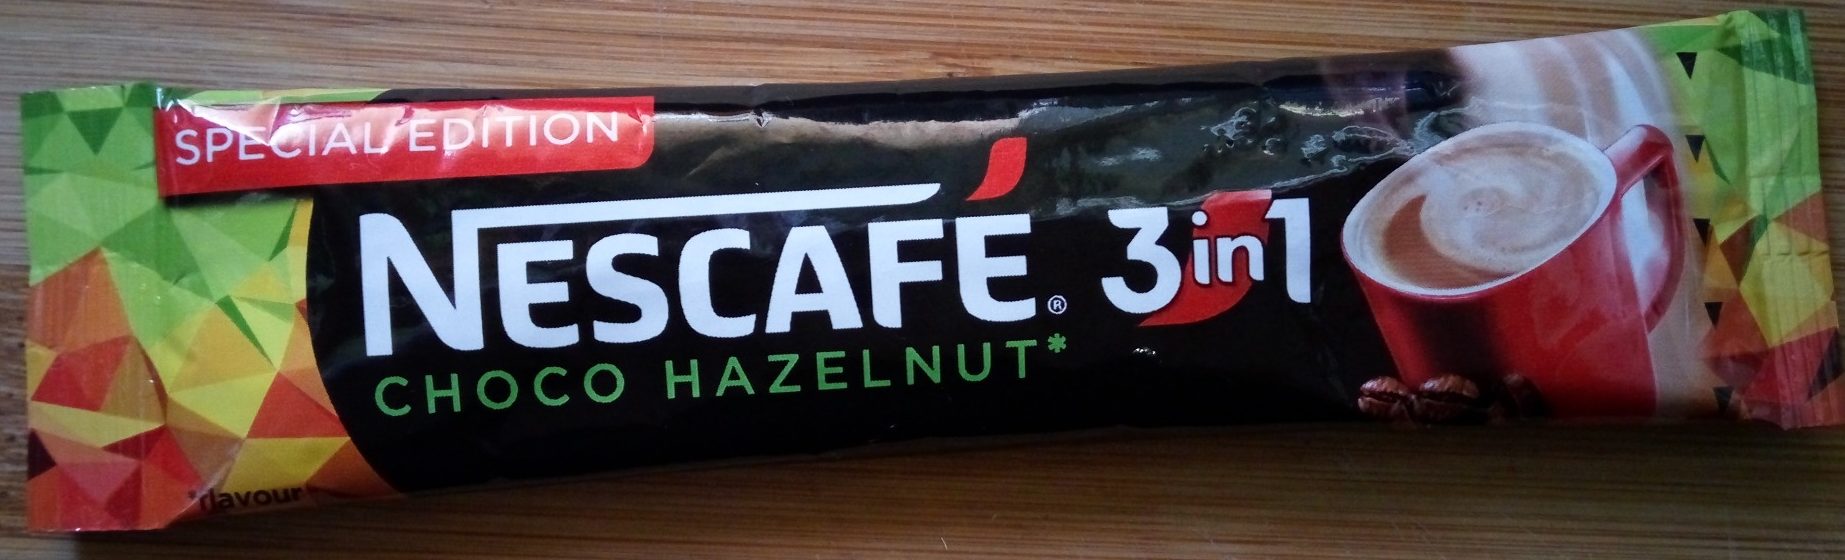 Nescafe 3in1 choco hazelnut - Производ